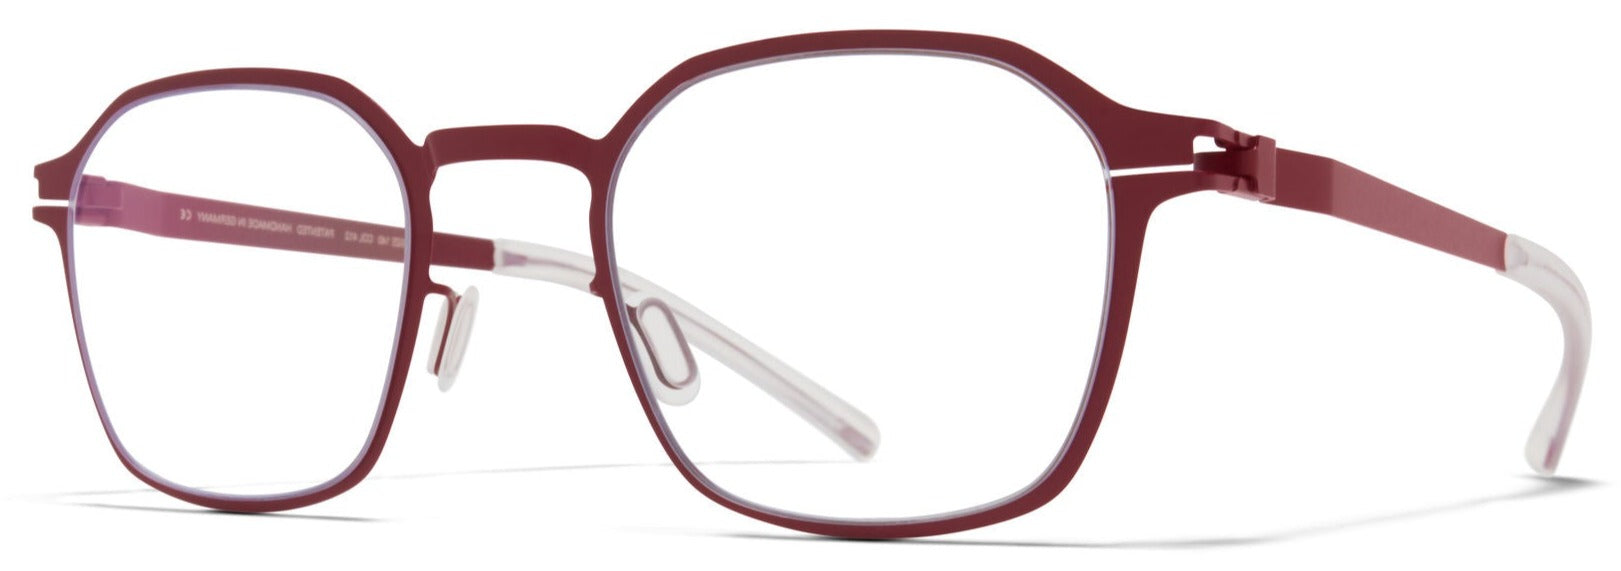 Alexander Daas - Mykita Baker Eyeglasses - Cranberry - Side View